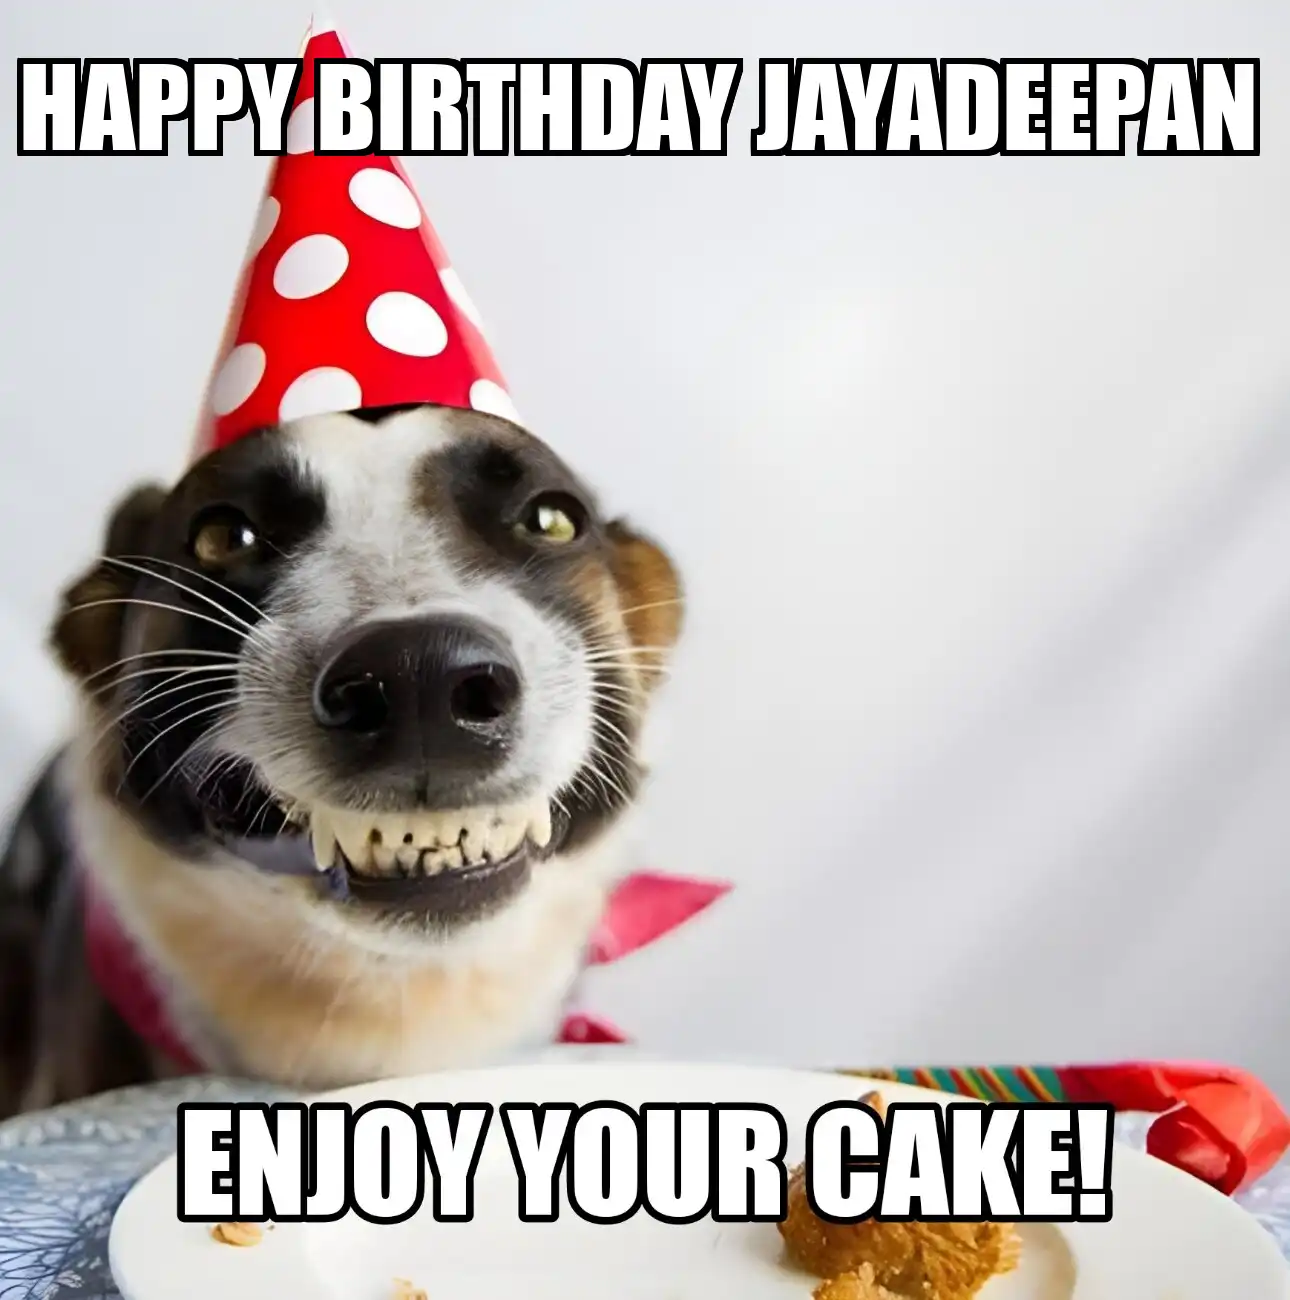 Happy Birthday Jayadeepan Enjoy Your Cake Dog Meme